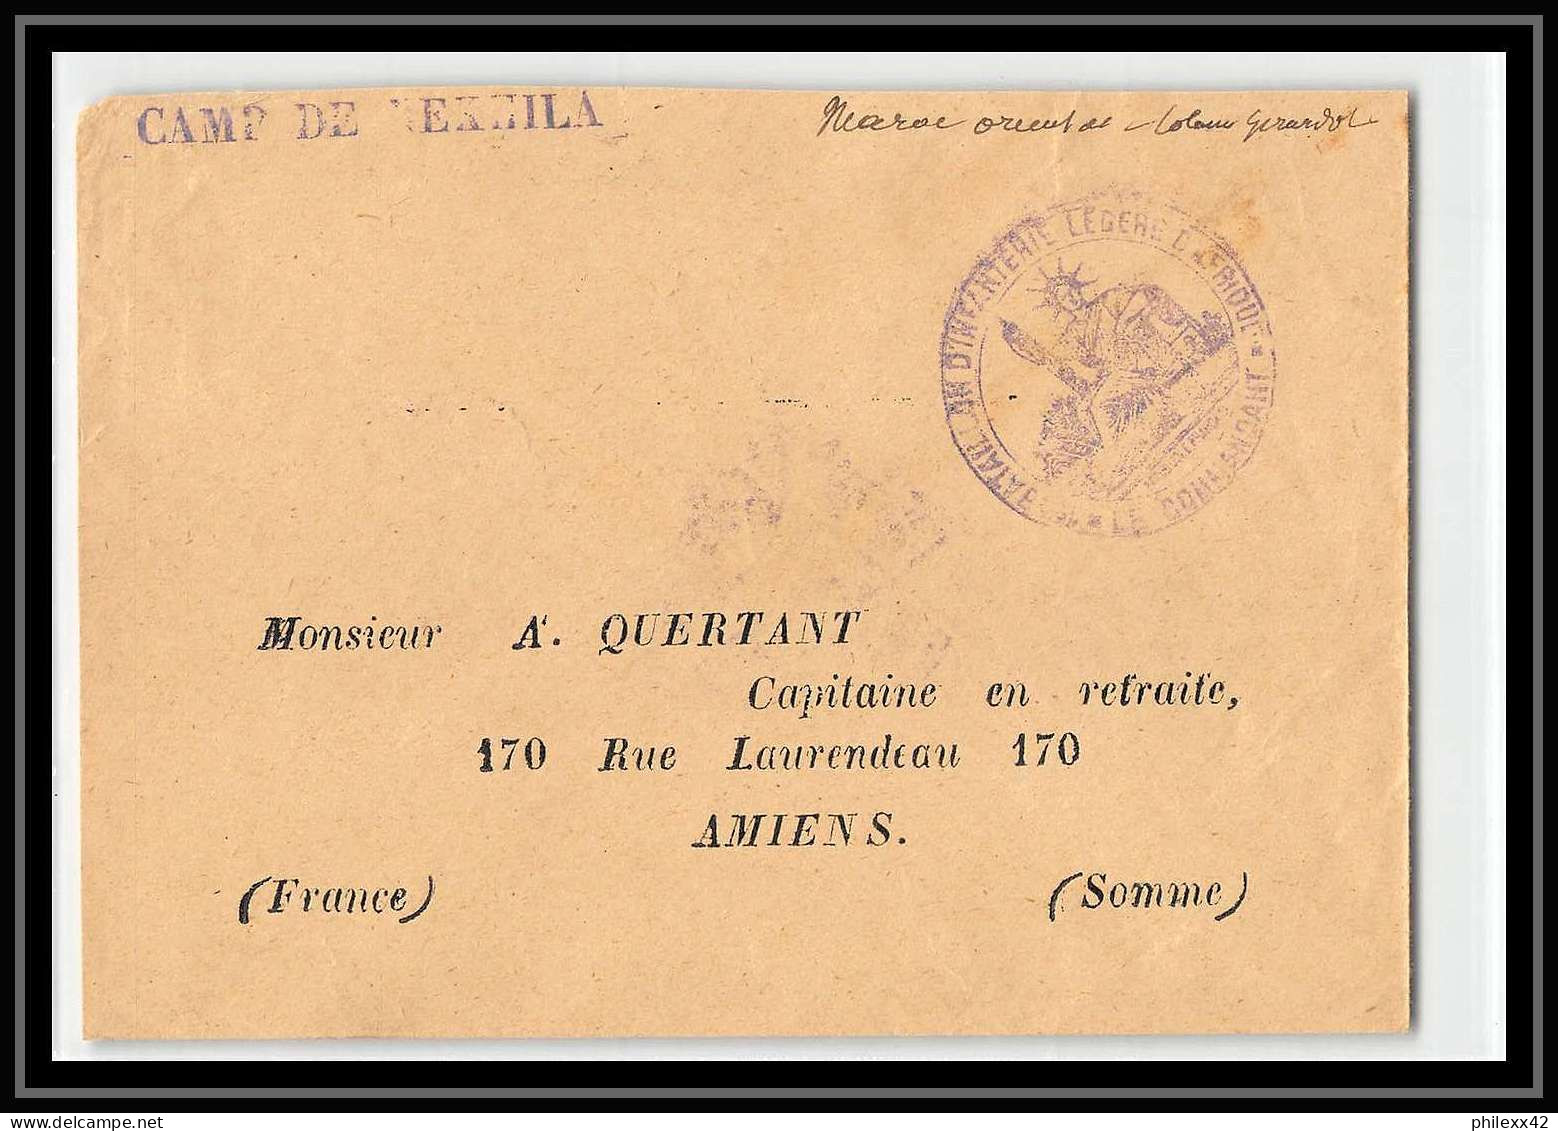 1023 Poste Griffe Camp De Nekhila 1913 Lettre Cover Occupation Du Maroc War - Covers & Documents